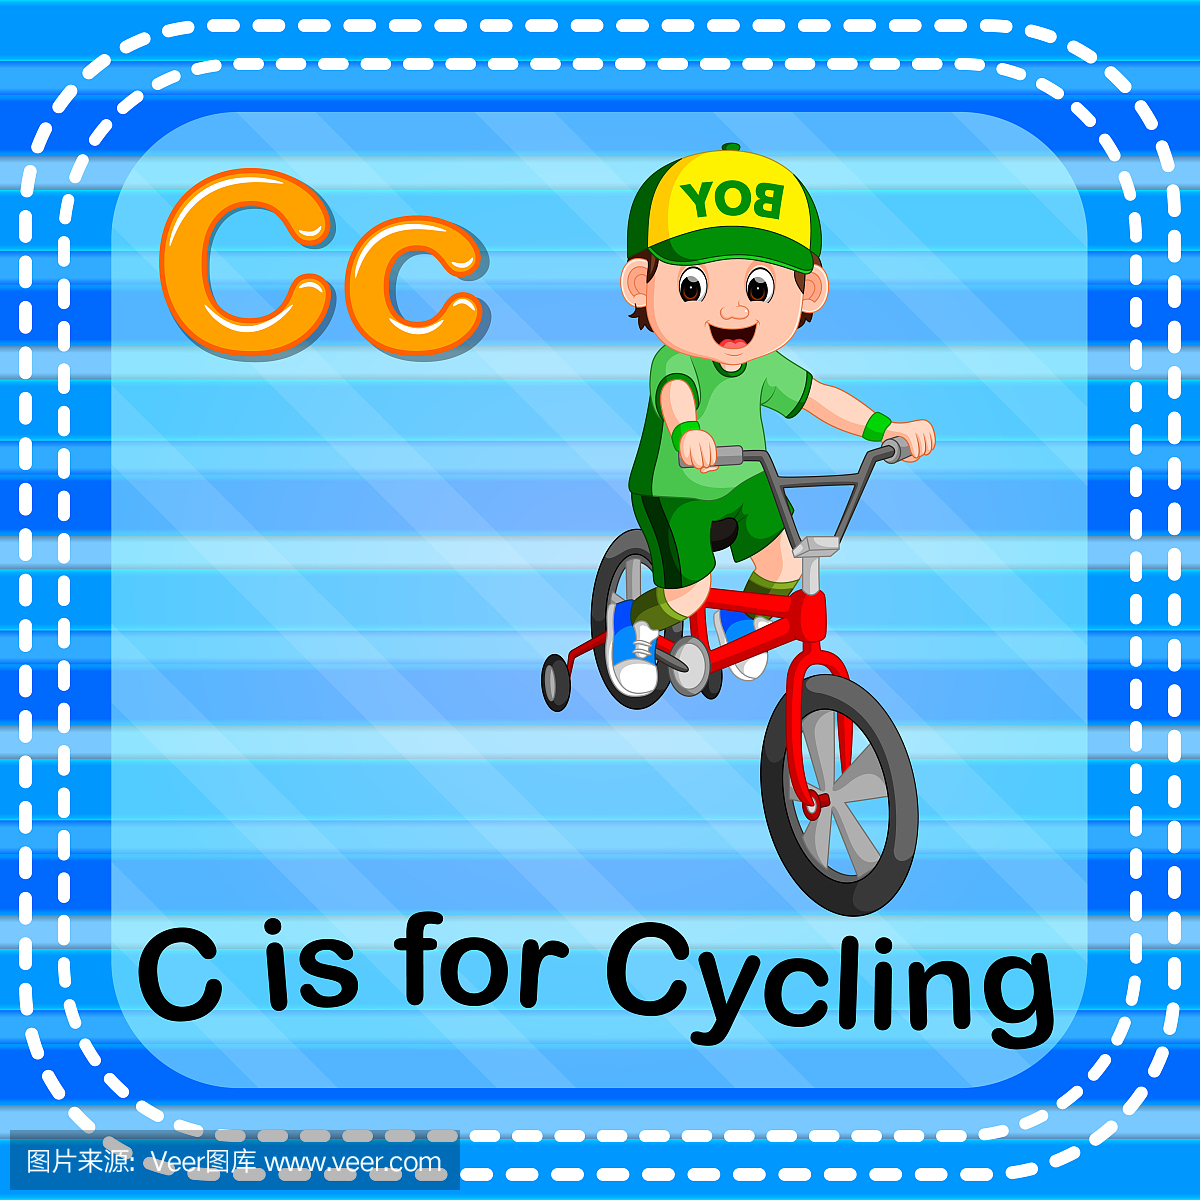 抽认卡字母C用于骑自行车